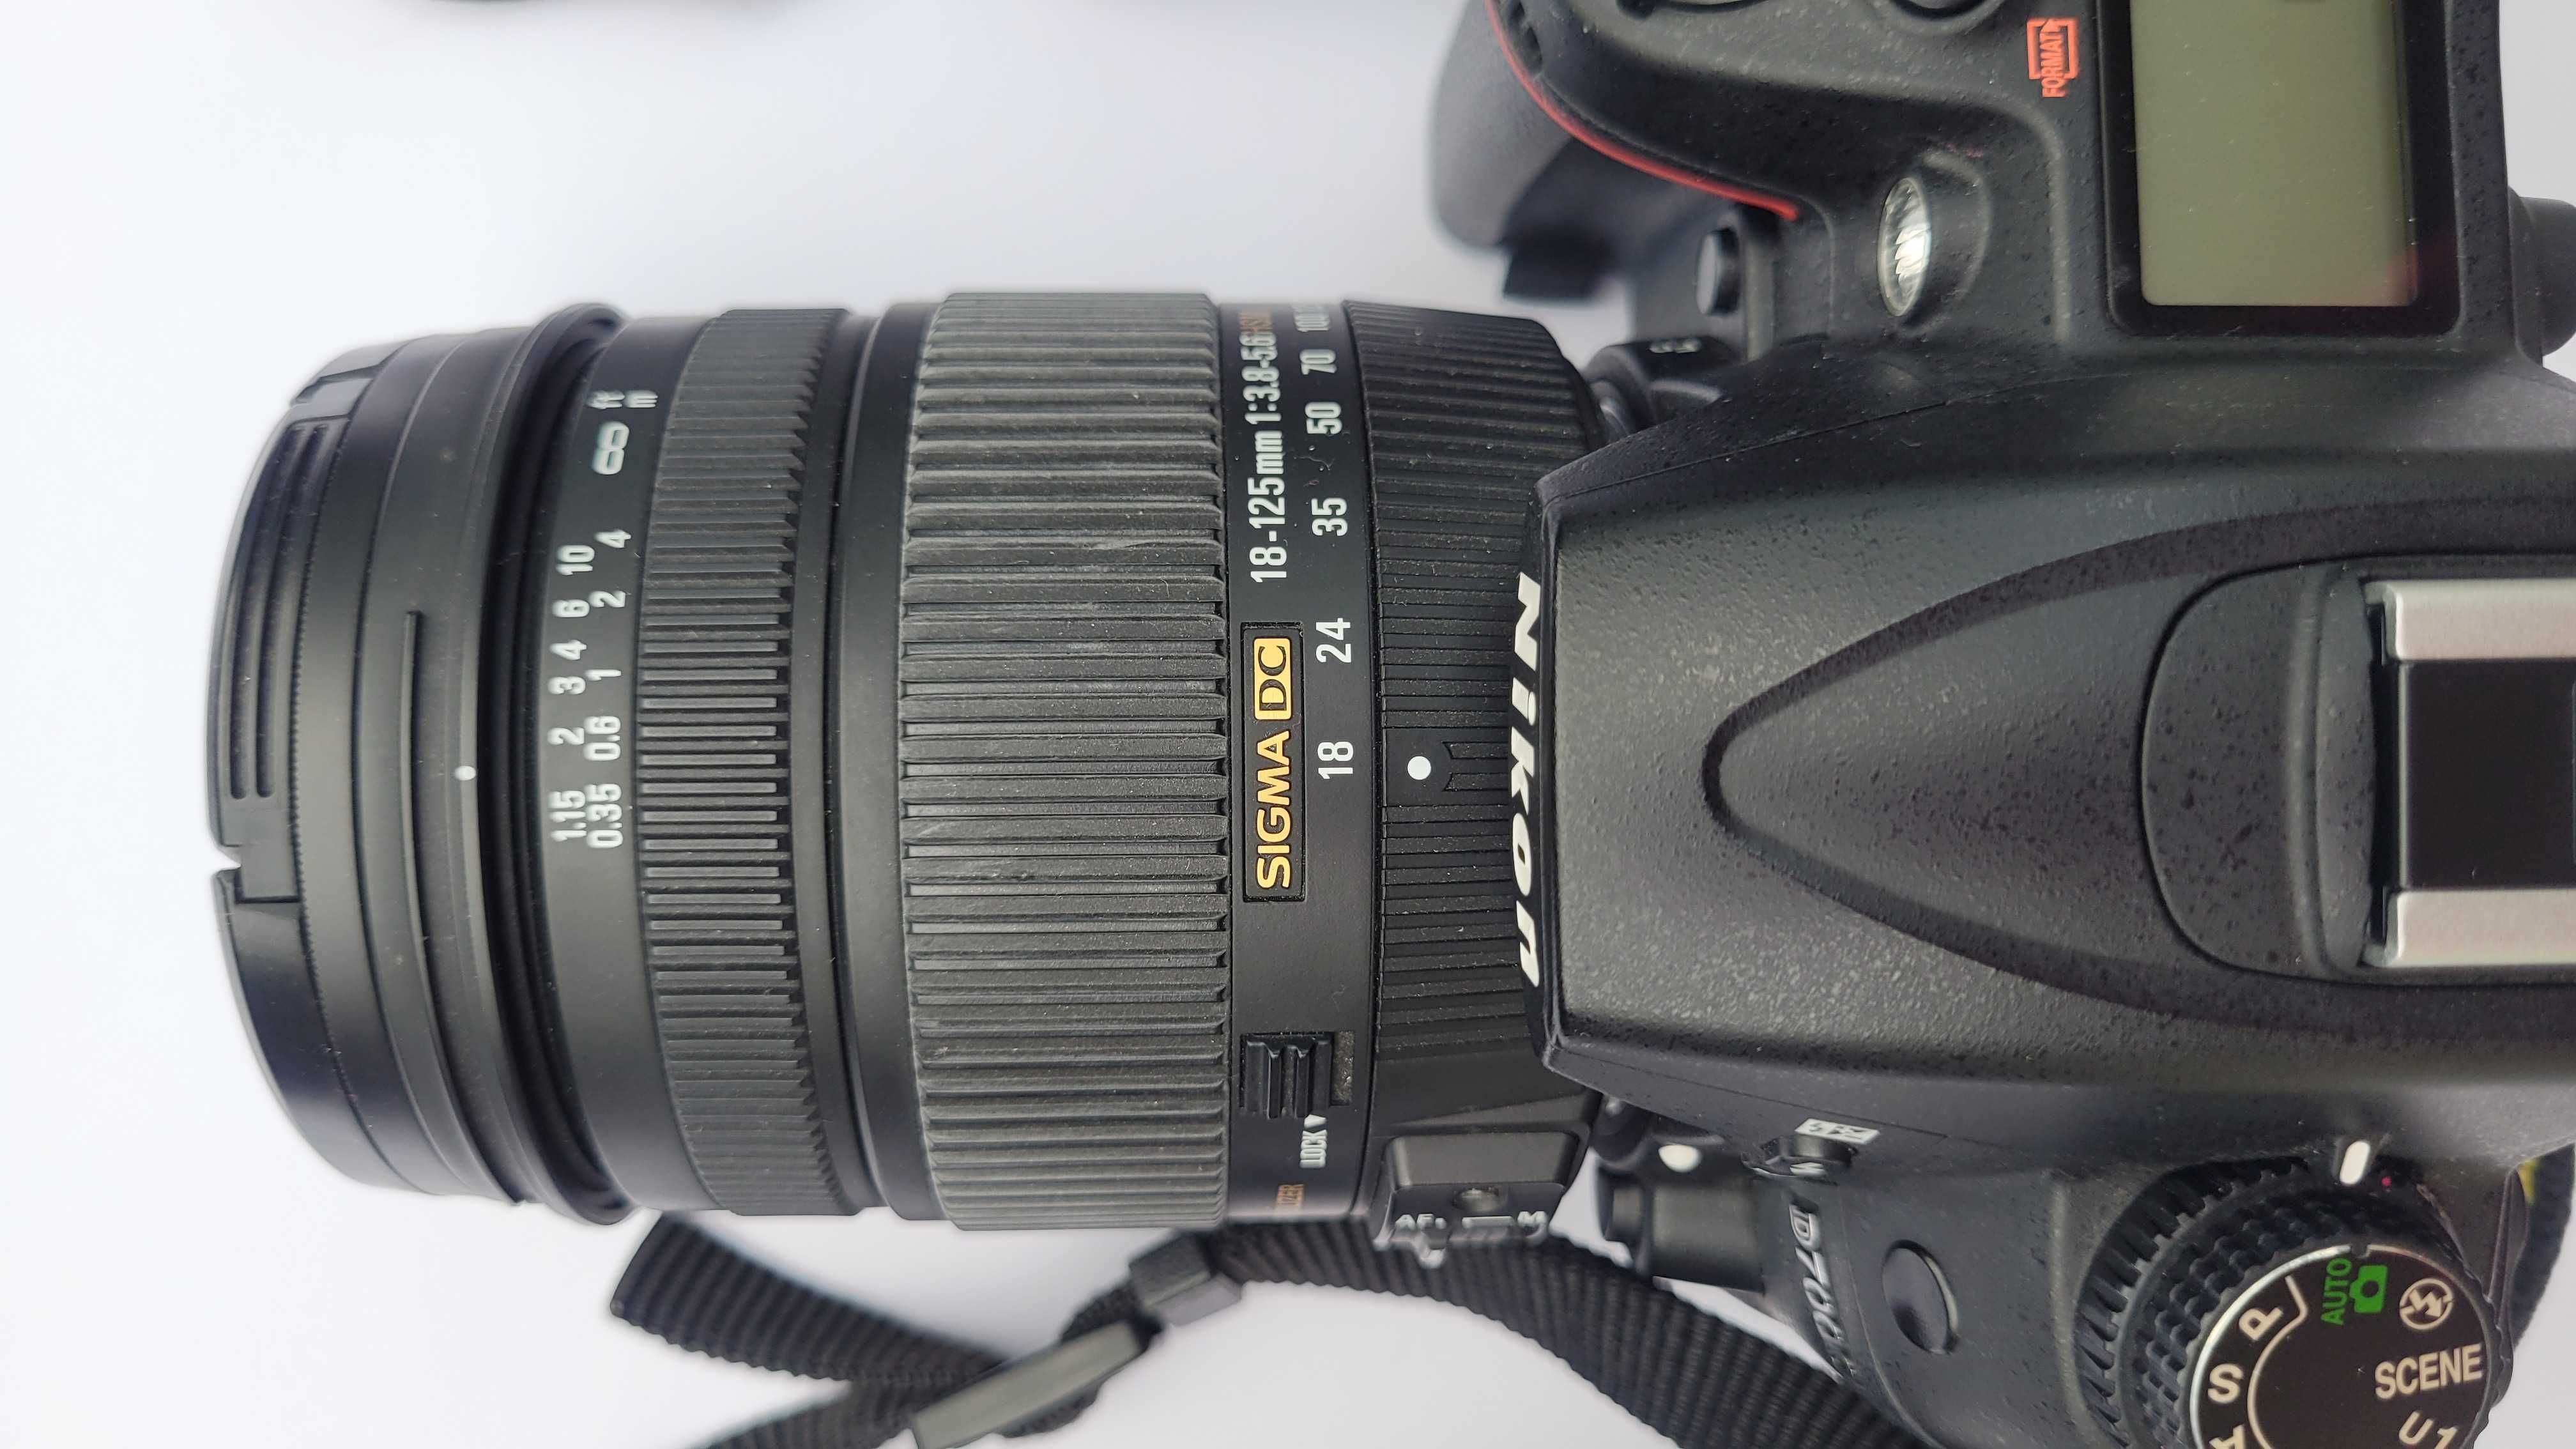 Aparat Nikon D7000 + obiektyw Sigma DC 18-125mm + akcesoria